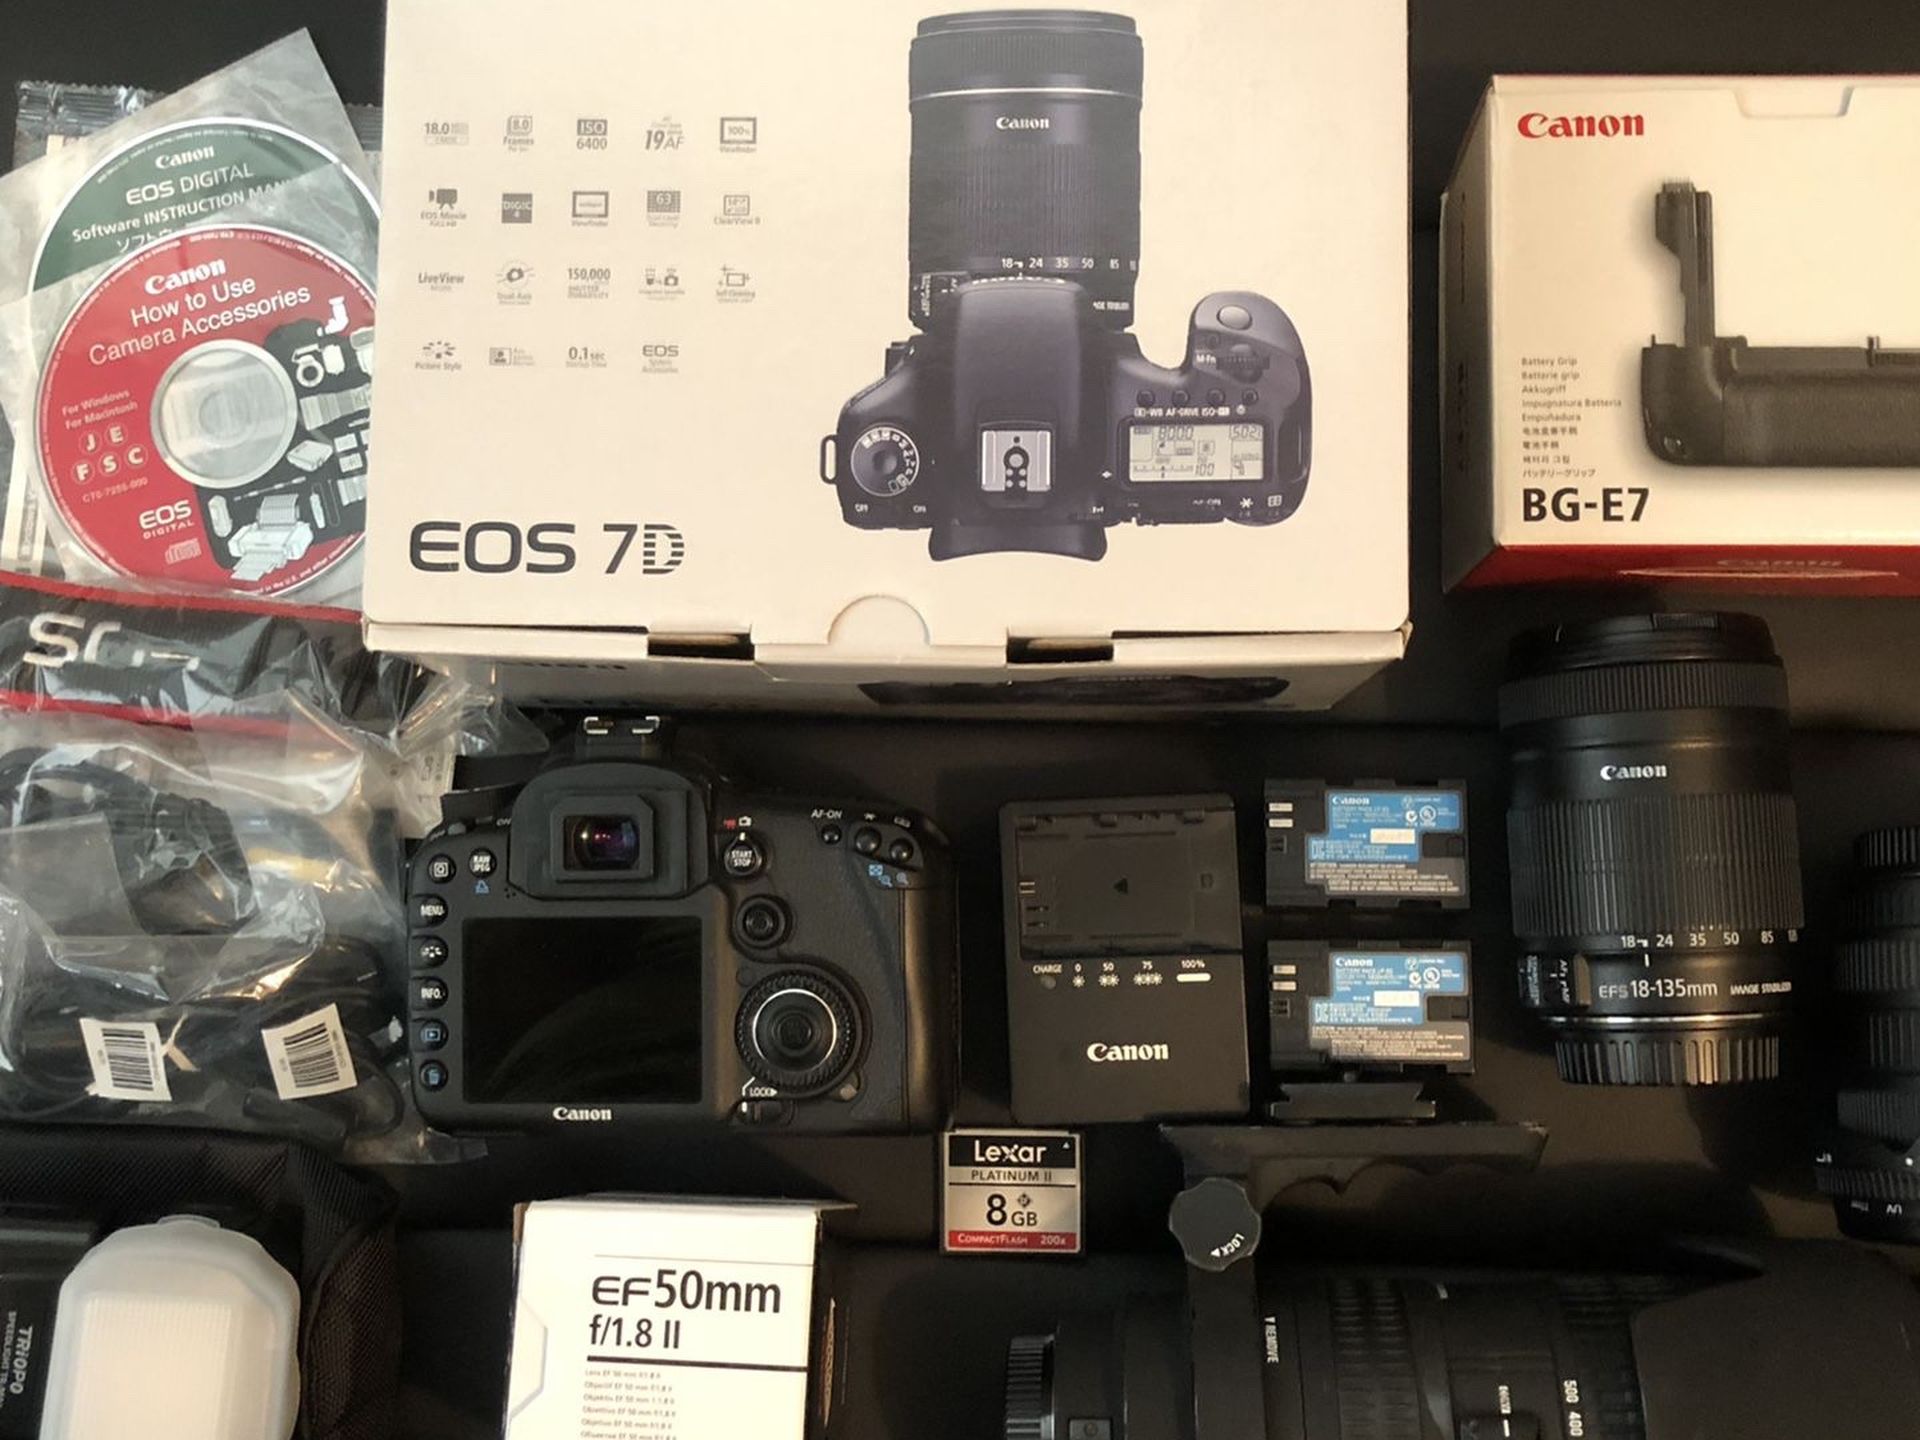 Canon 7D bundle Plus Studio Photography Items